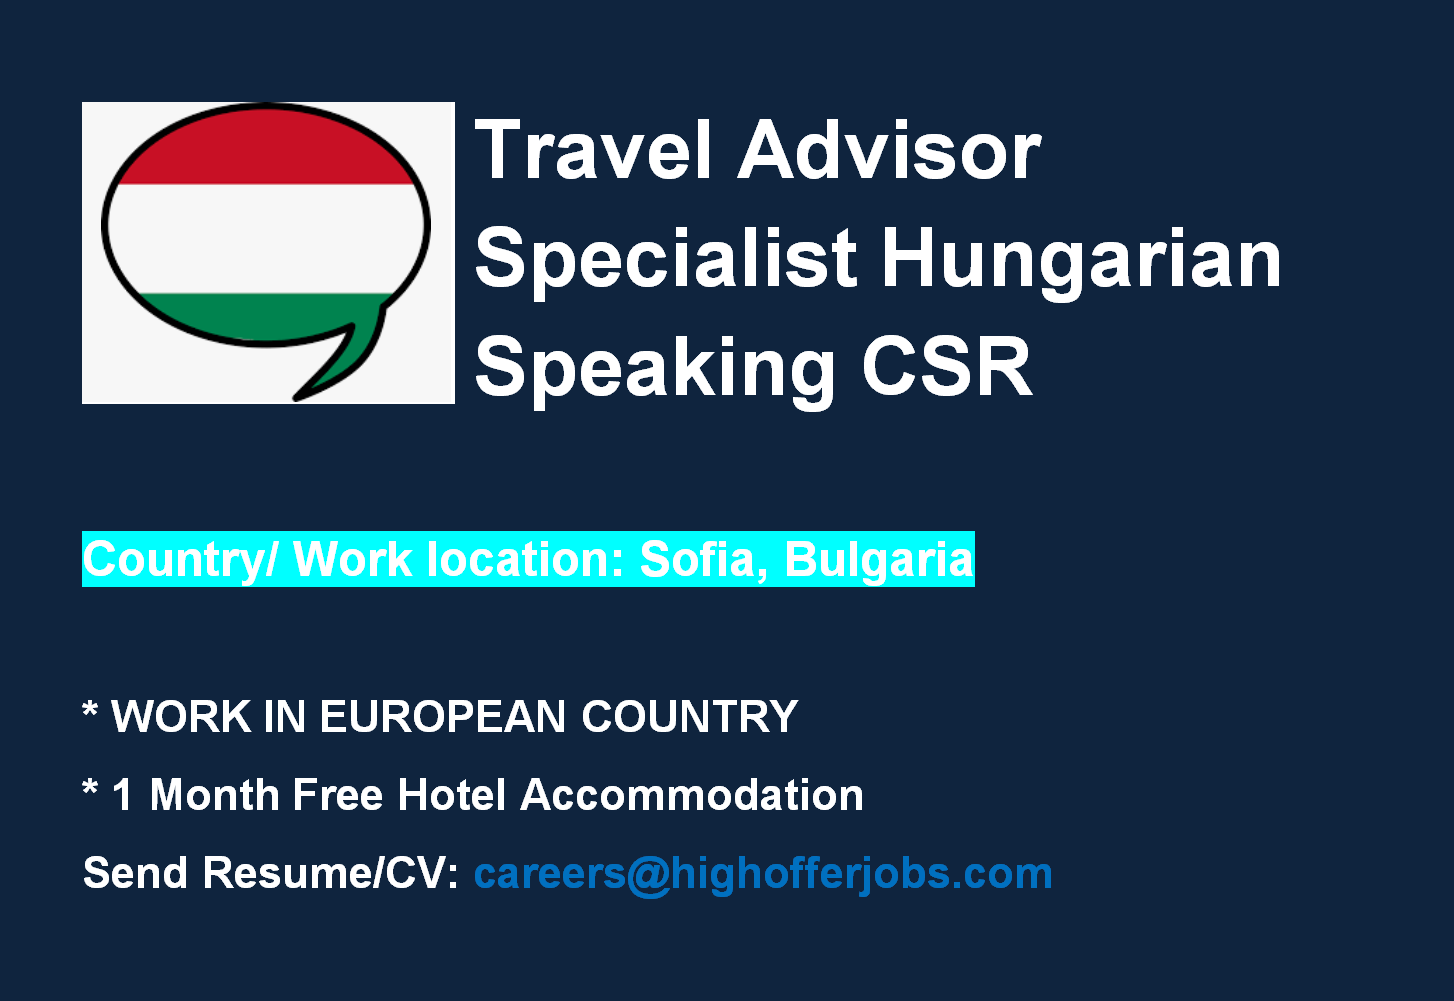 Travel Advisor Specialist - Hungarian Speaking CSR for Air France